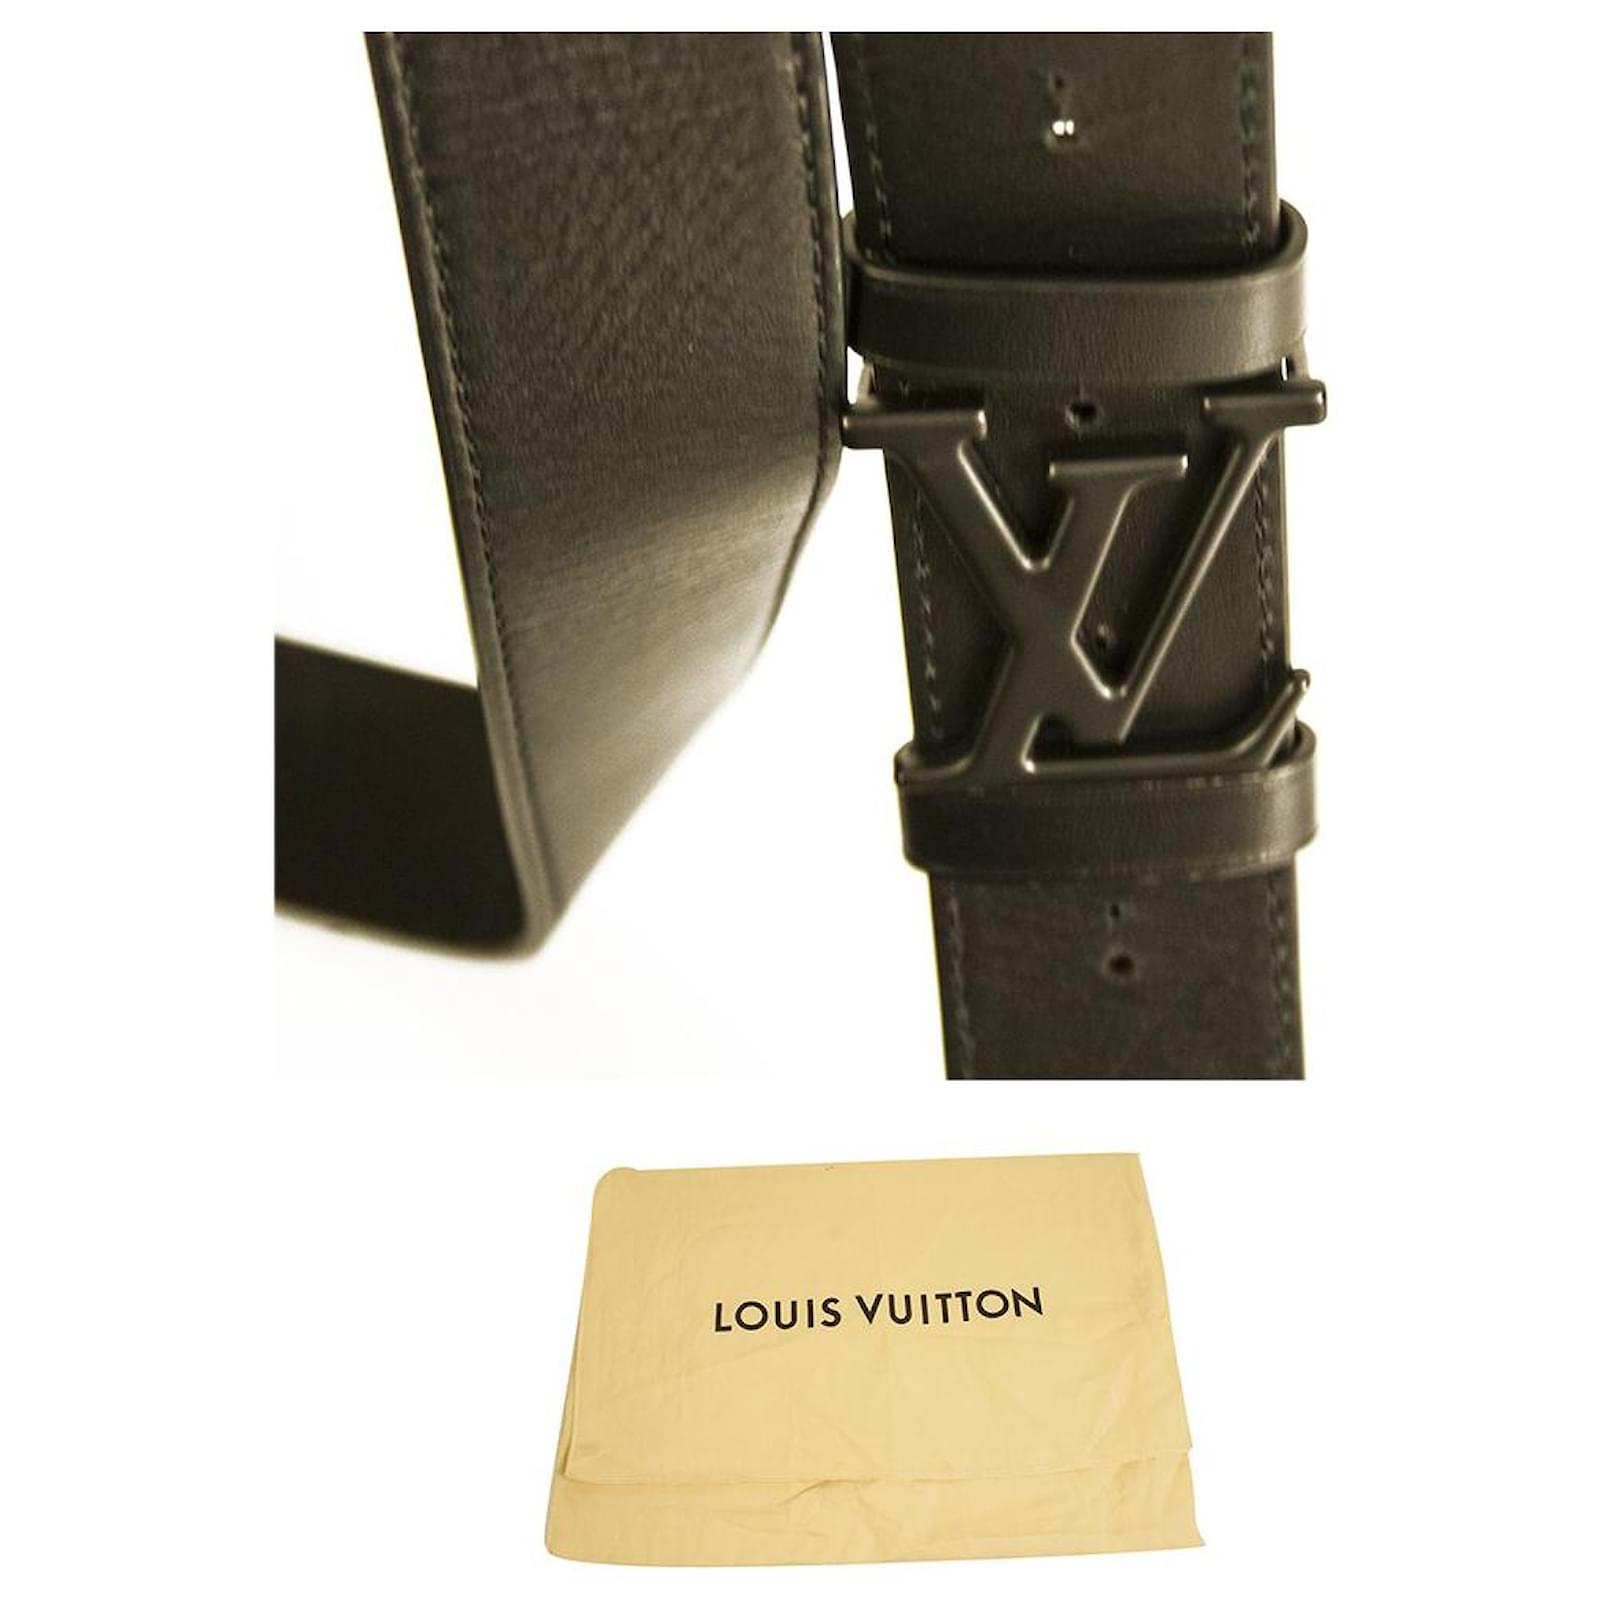 Shop Louis Vuitton EPI Box messenger (M58492) by MUTIARA